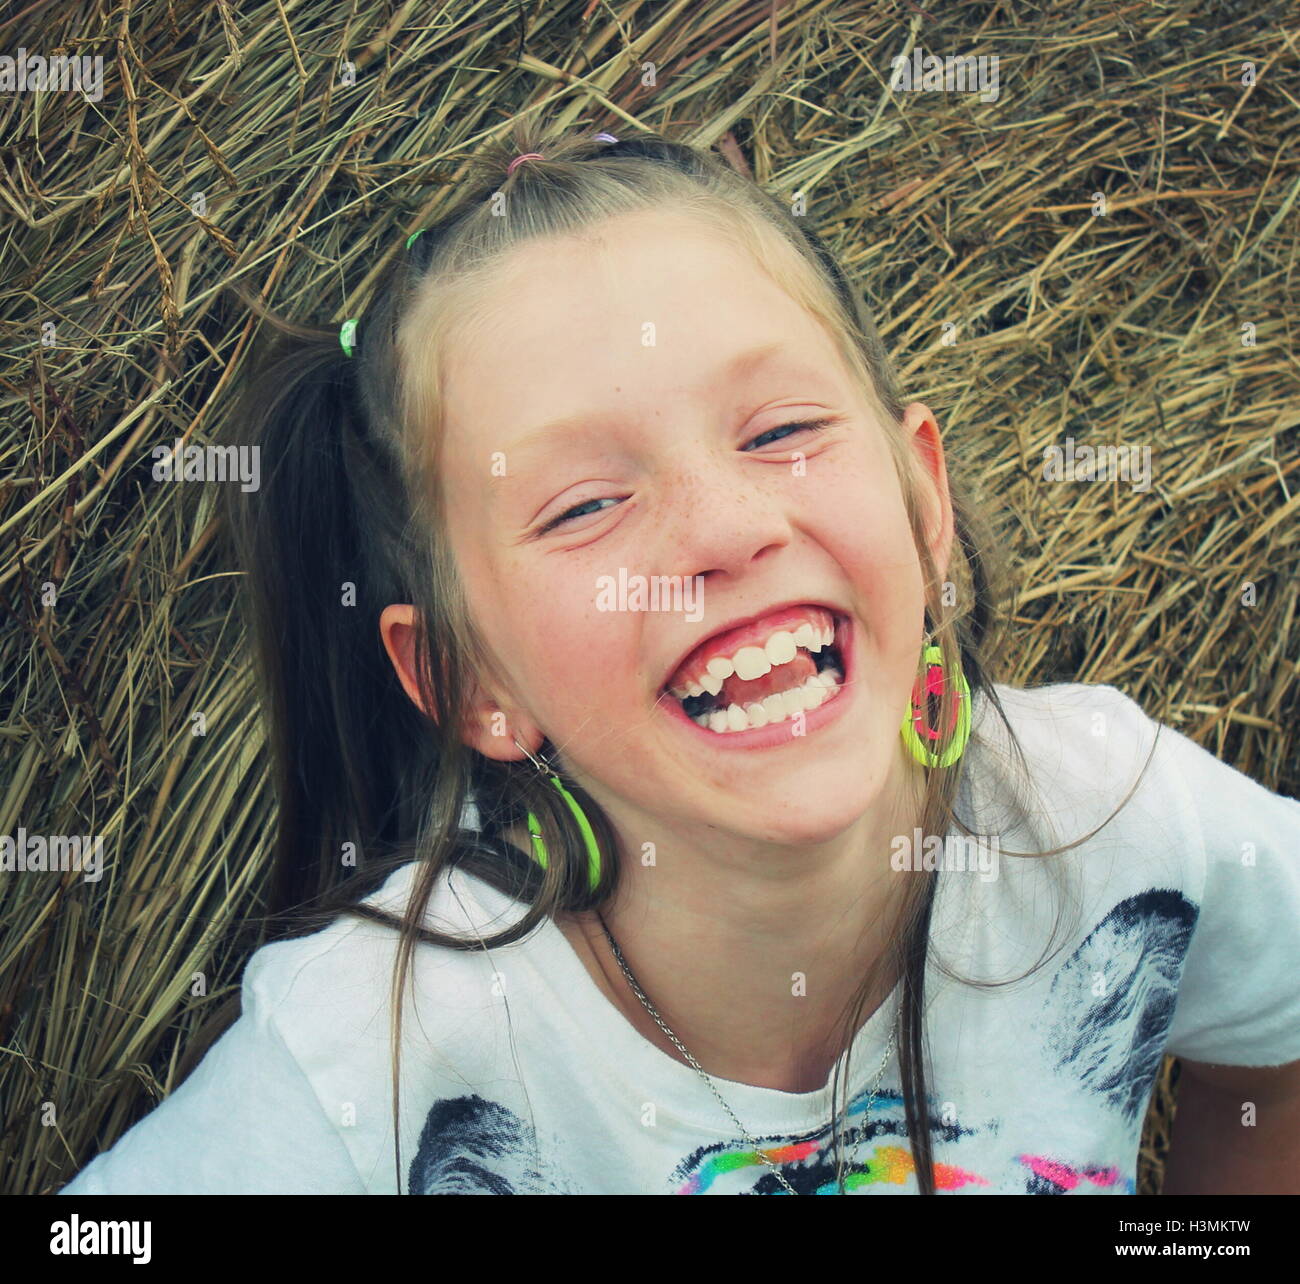 Jeune fille blonde en souriant joyeusement tout en jouant sur les balles de foin Banque D'Images